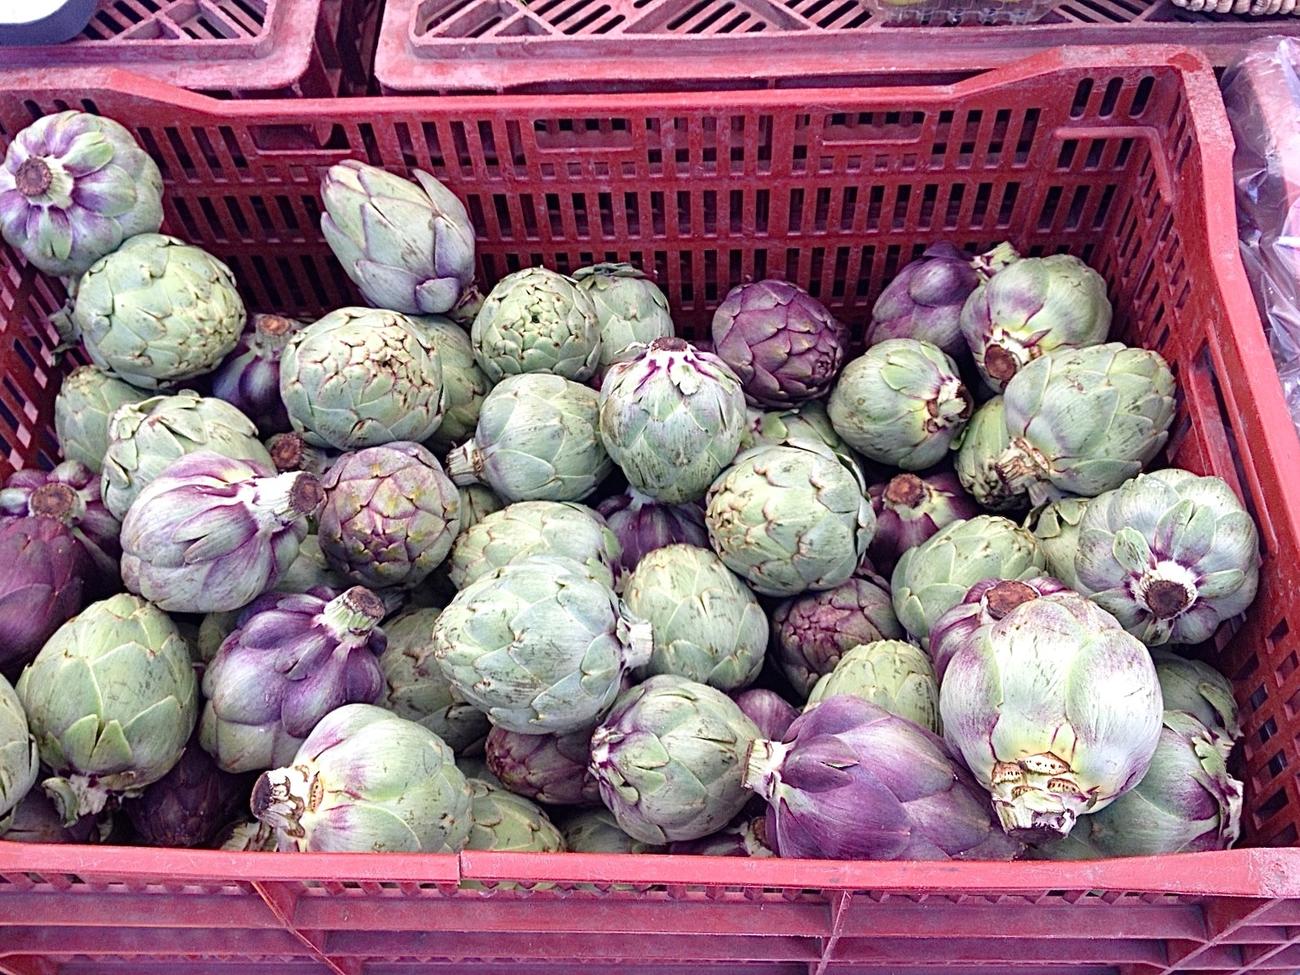 Farmers’ market find: purple artichokes